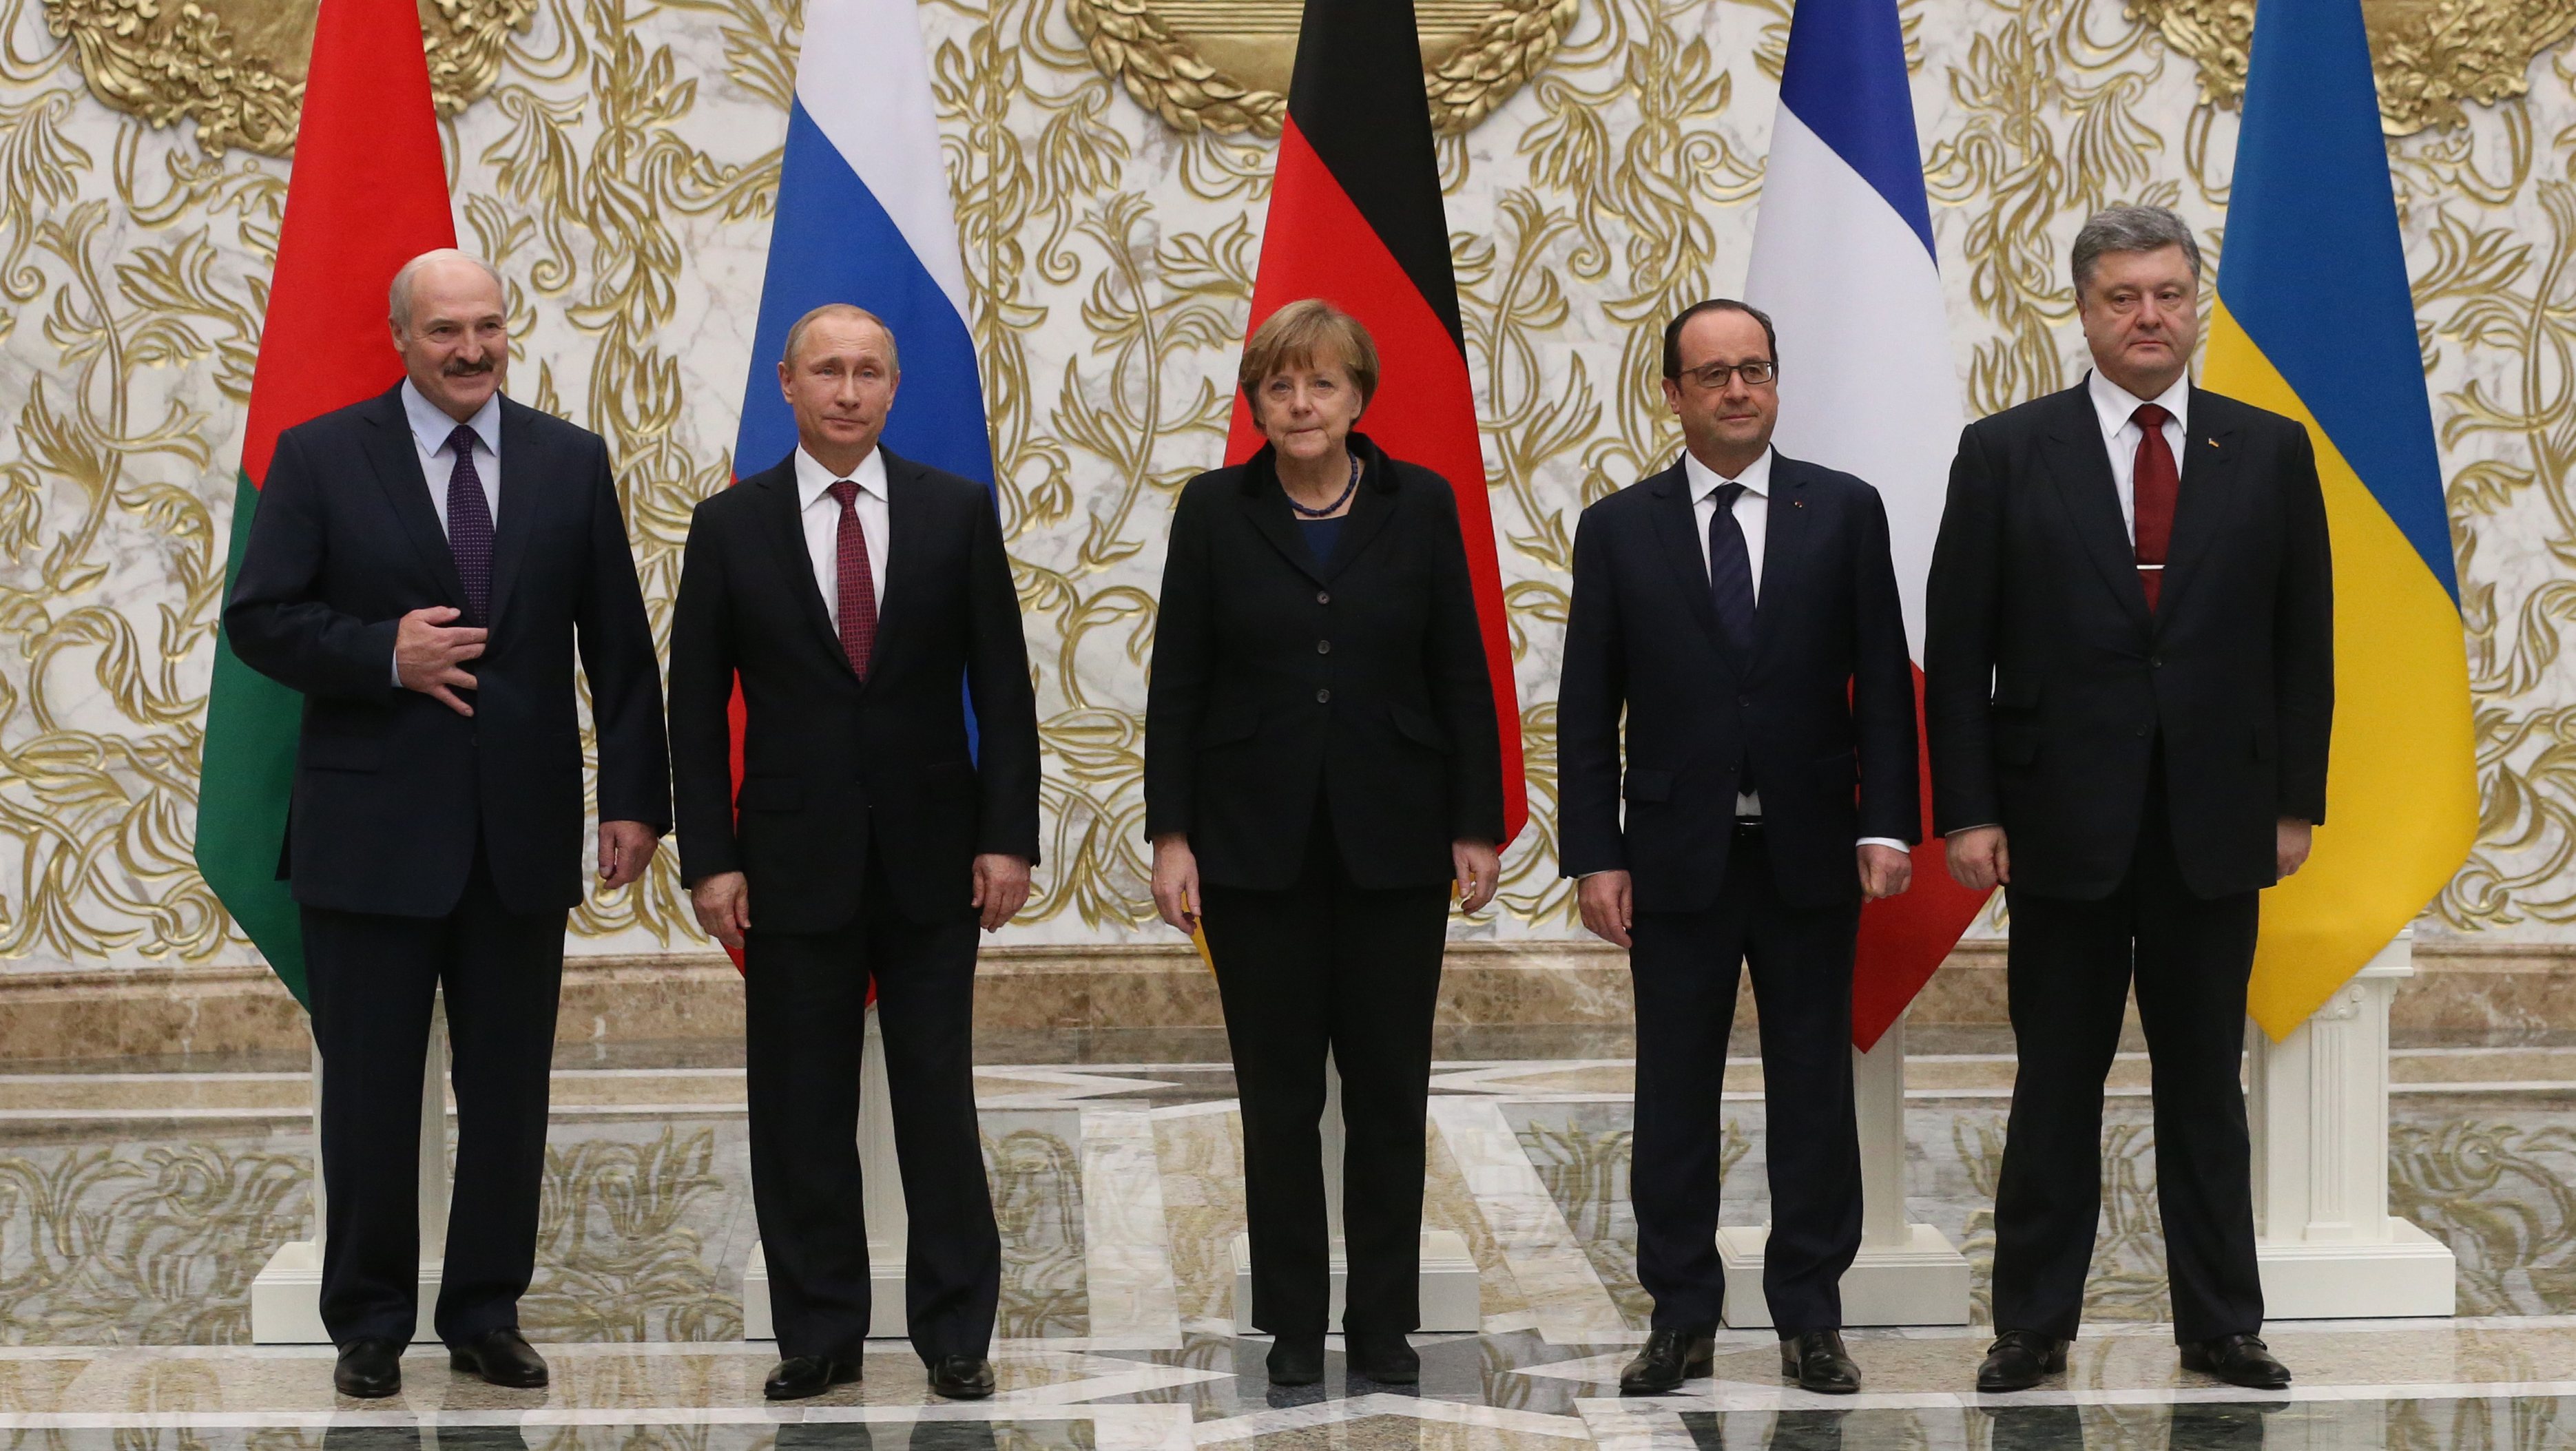 World Leaders Meet in Belarus to Discuss Cease-Fire in Ukraine